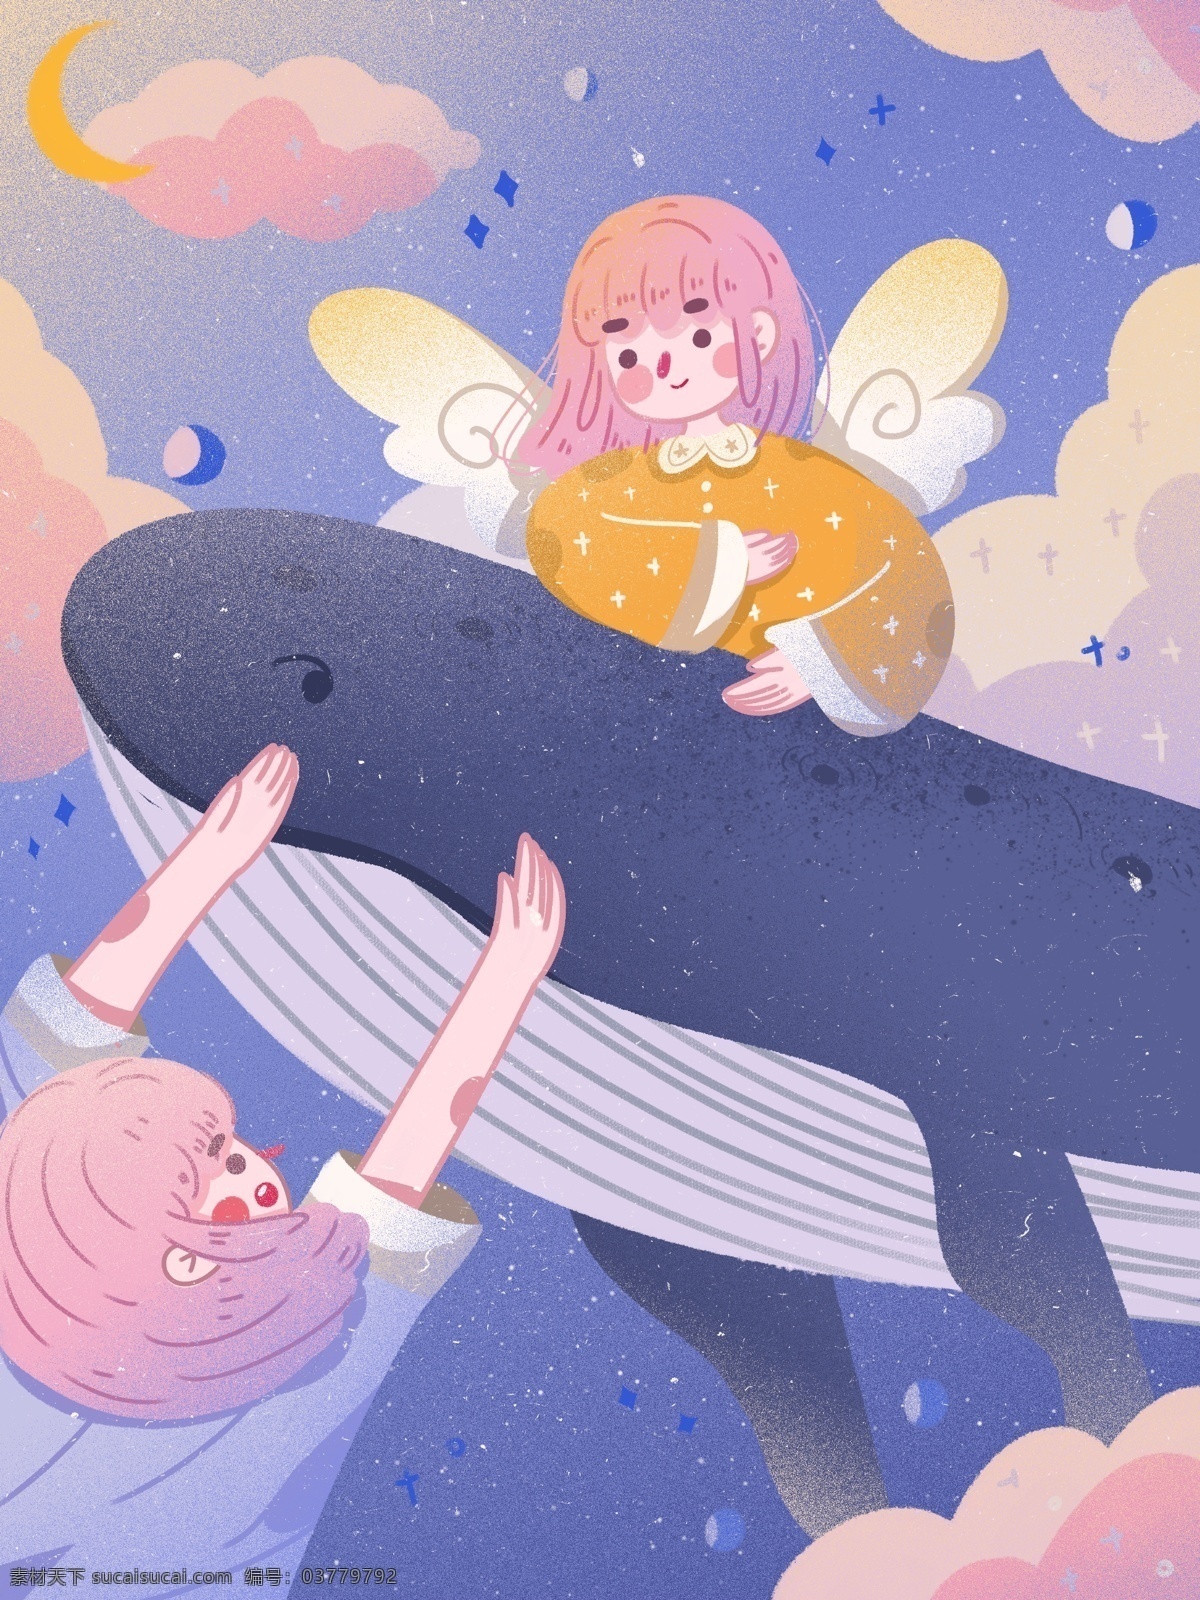 鲸鱼 女孩 治愈 系 星空 浪漫 唯美 梦幻 创意 插画 星星 可爱 海报 月亮 精灵 梦境